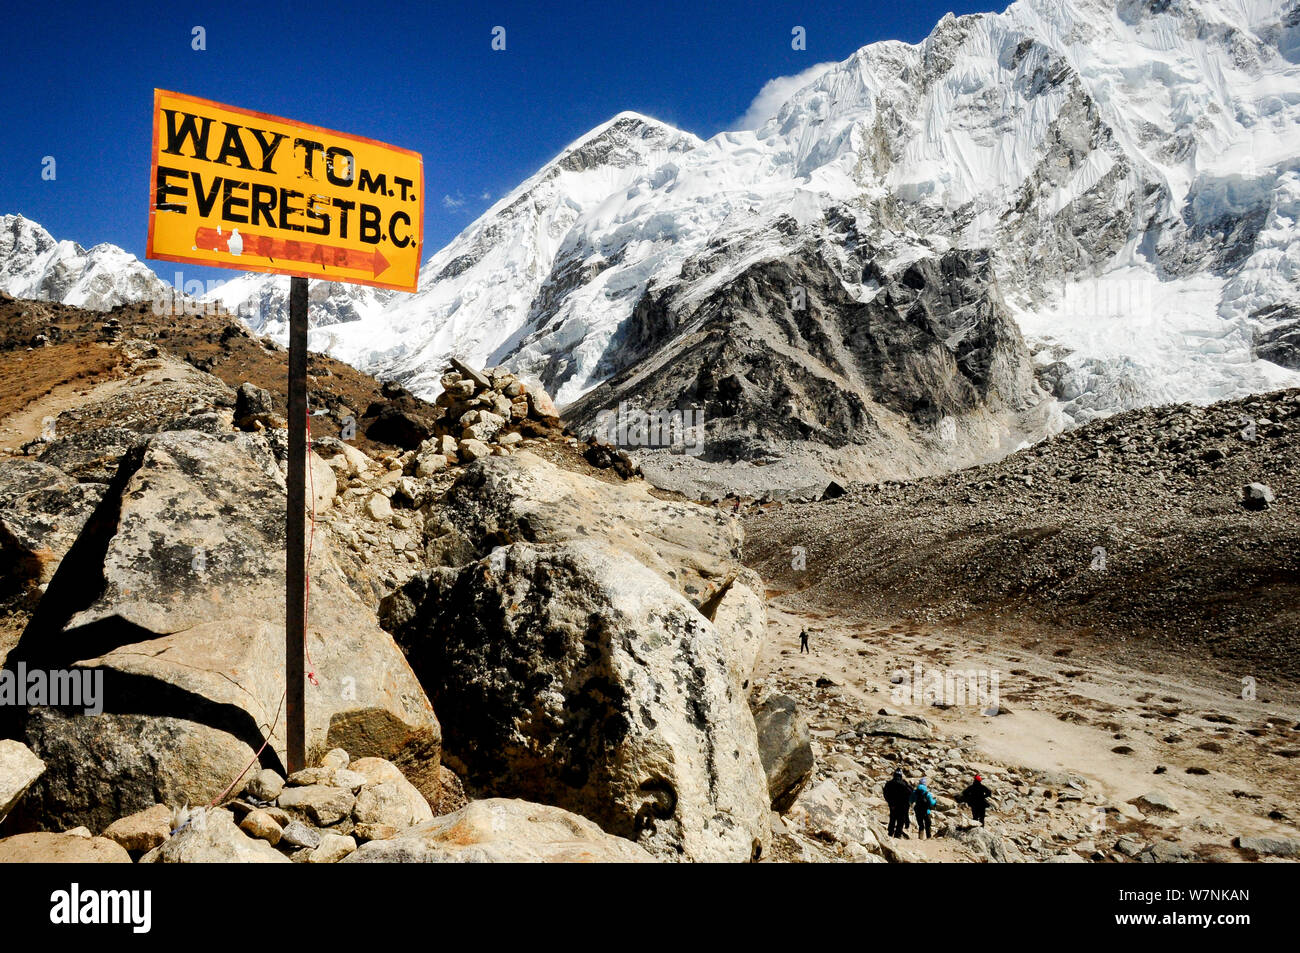 Way to Everest Base Camp sign, Khumbu Glacier,  Sagarmatha National Park (World Heritage UNESCO). Khumbu / Everest Region, Nepal, Himalaya, October 2011. Stock Photo